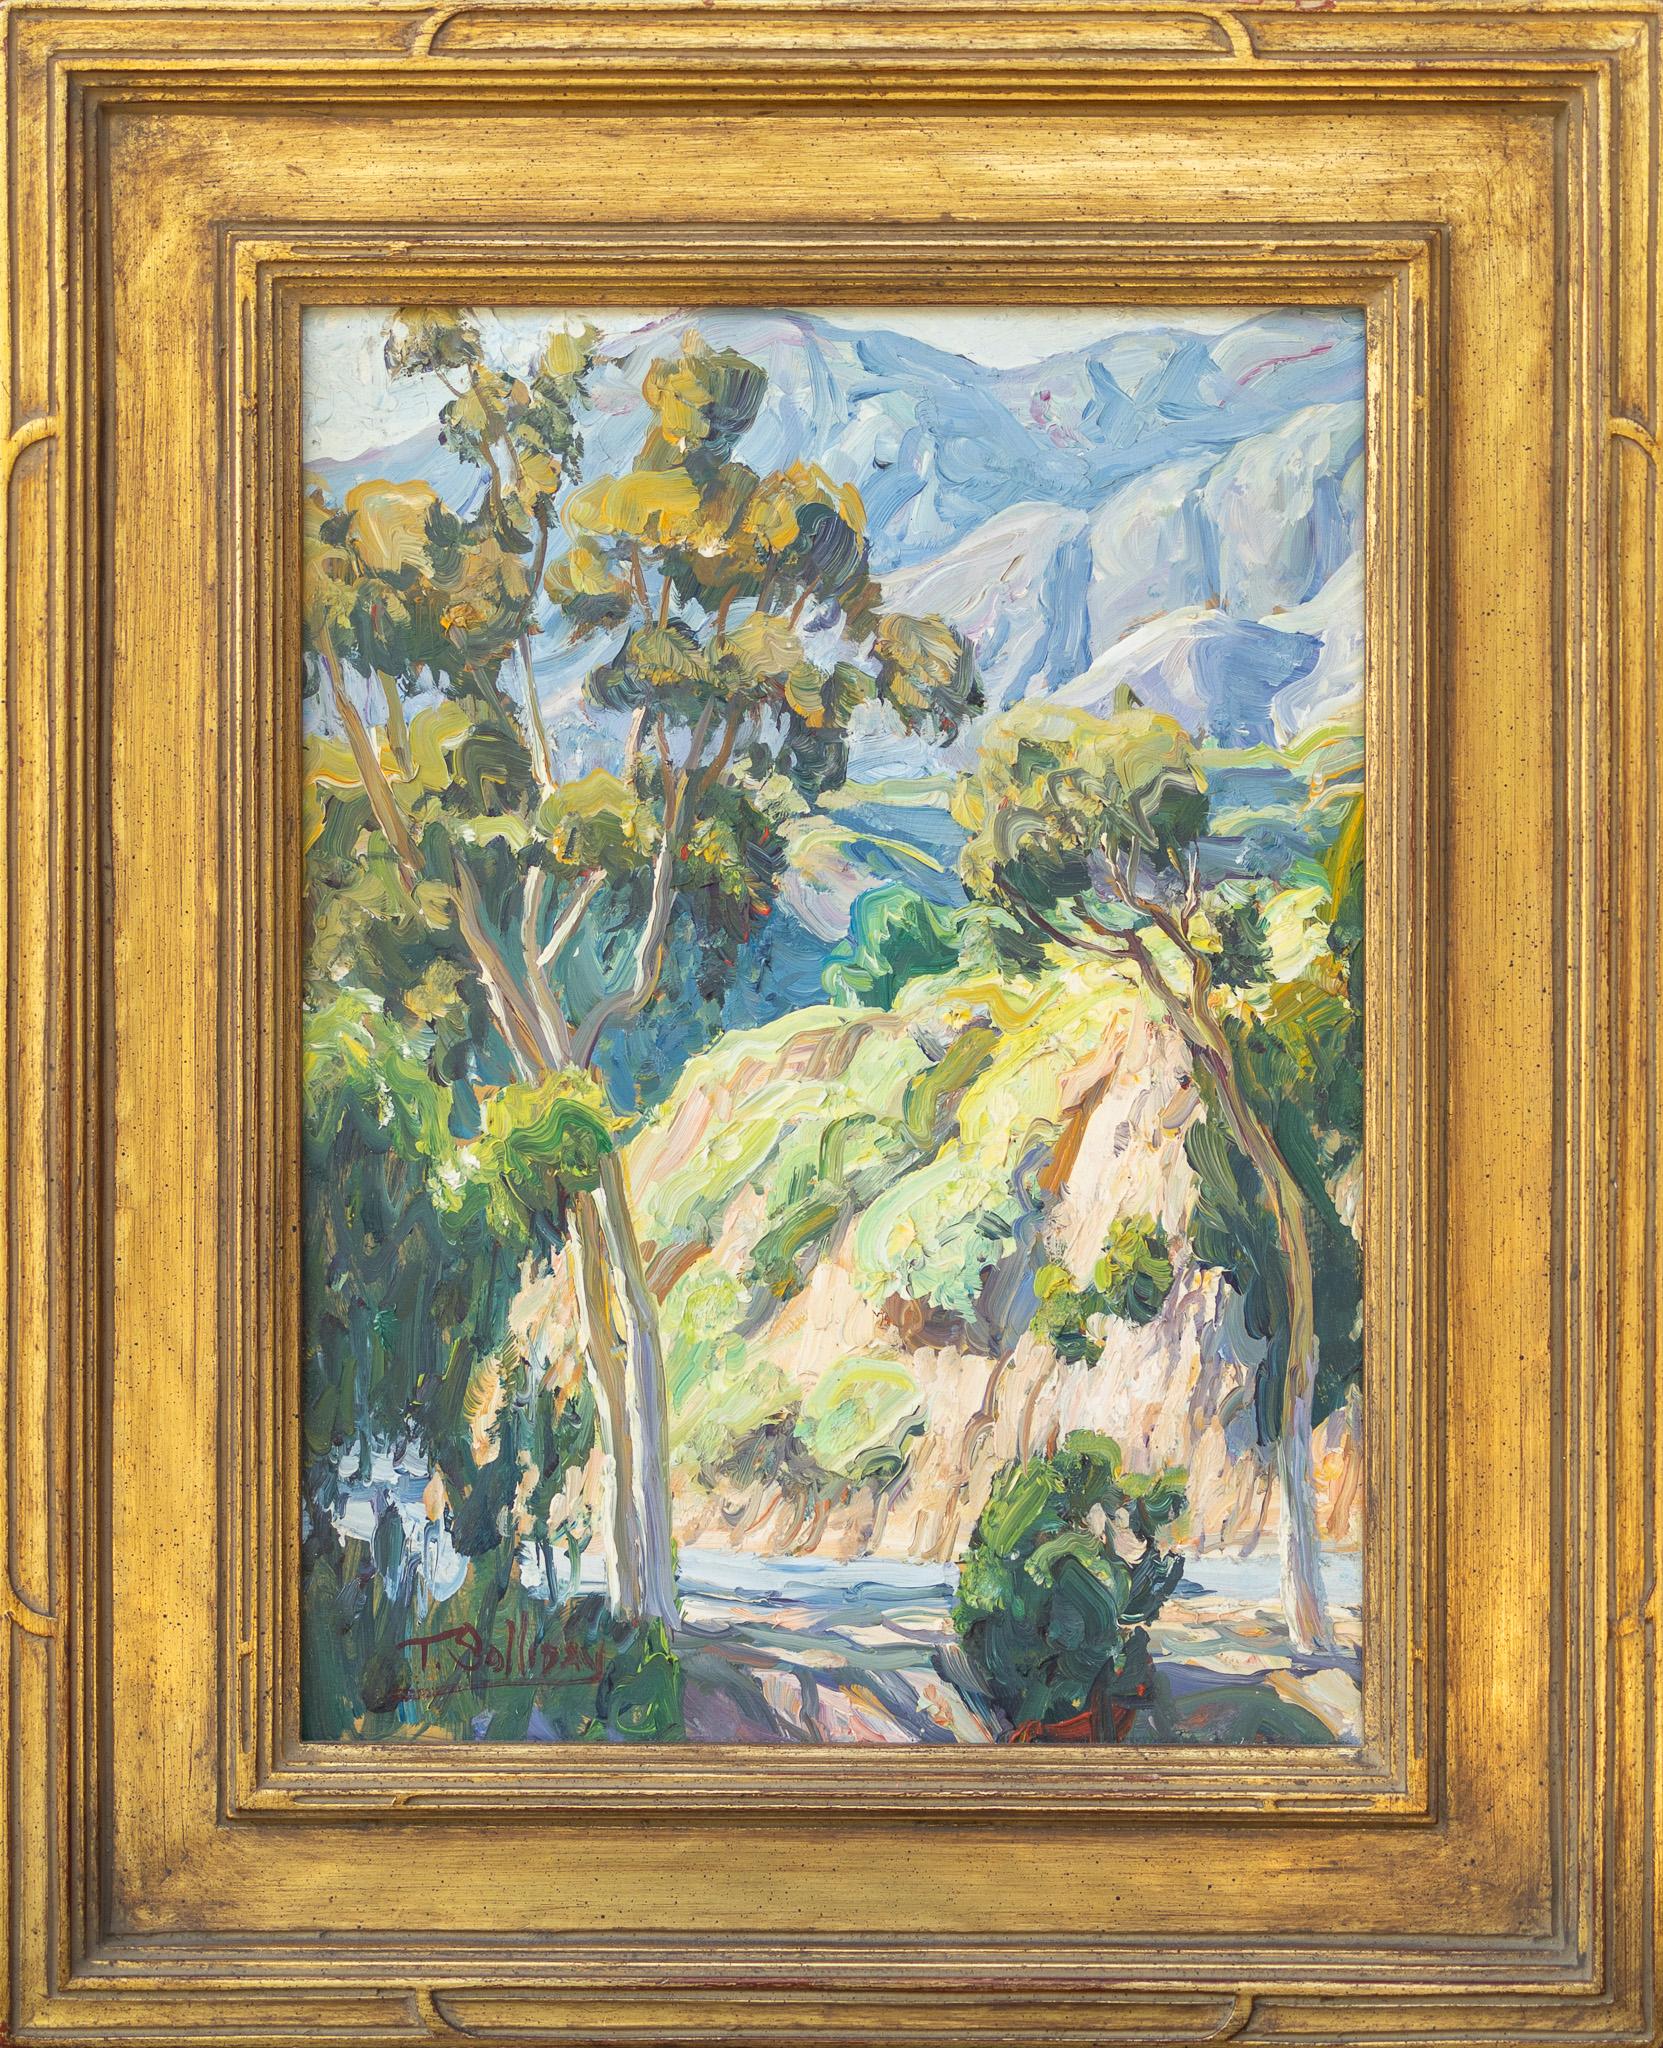 Scène de paysage colline avec arbres d'eucalyptus de Californie - Painting de Tim Solliday